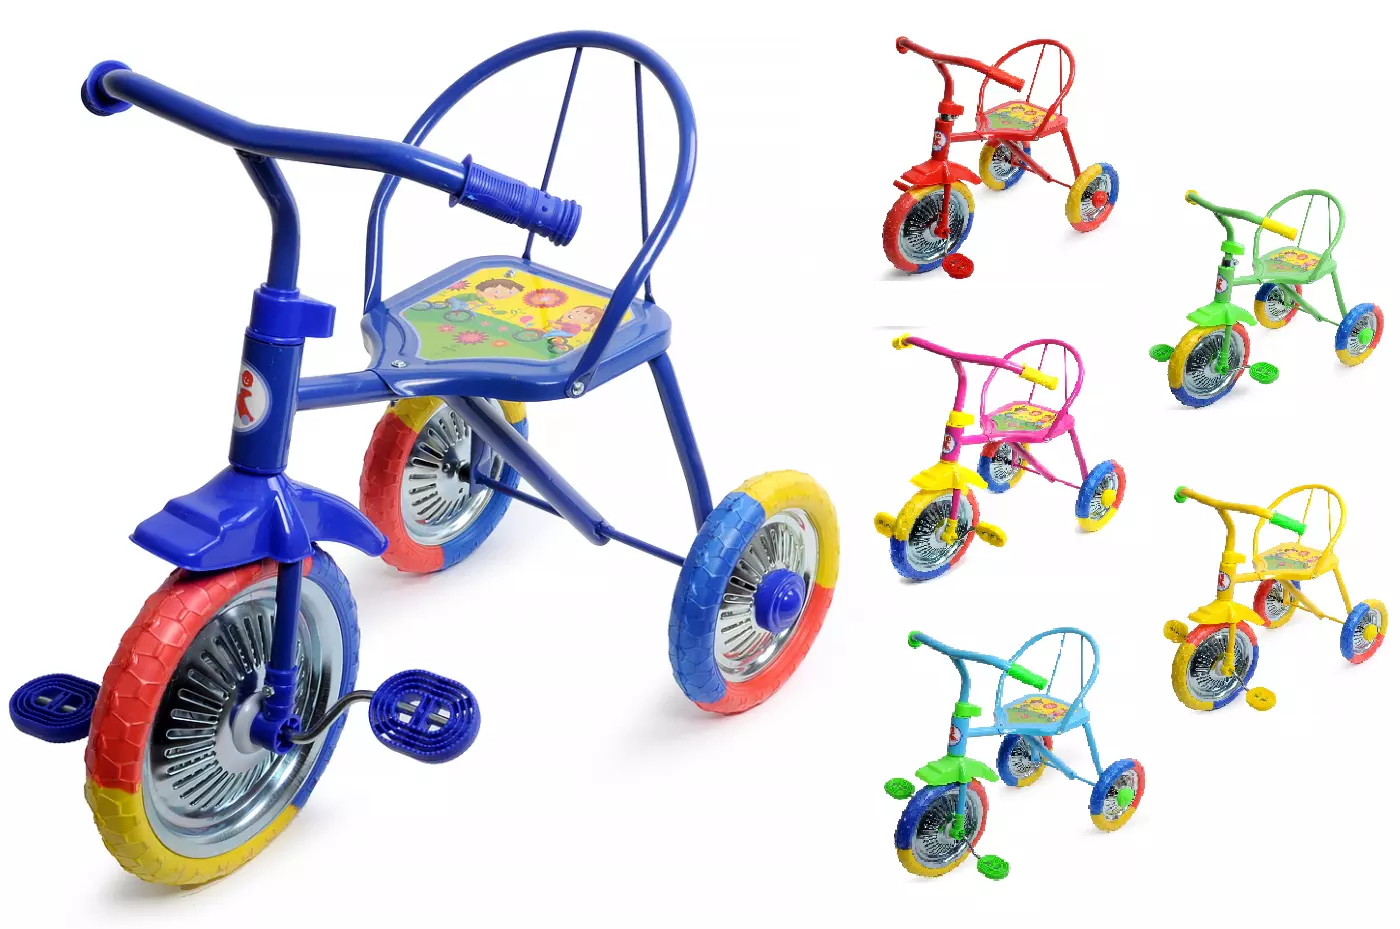 Магазины детские трехколесные велосипеды. Велосипед трехколесный lh702. Велосипед 3-х озорной ветерок GV-b3-2mx цвета микс. Трехколесный велосипед PN-1010, Panterra, "гвоздик". Велосипед трёхколёсный детский lh702.